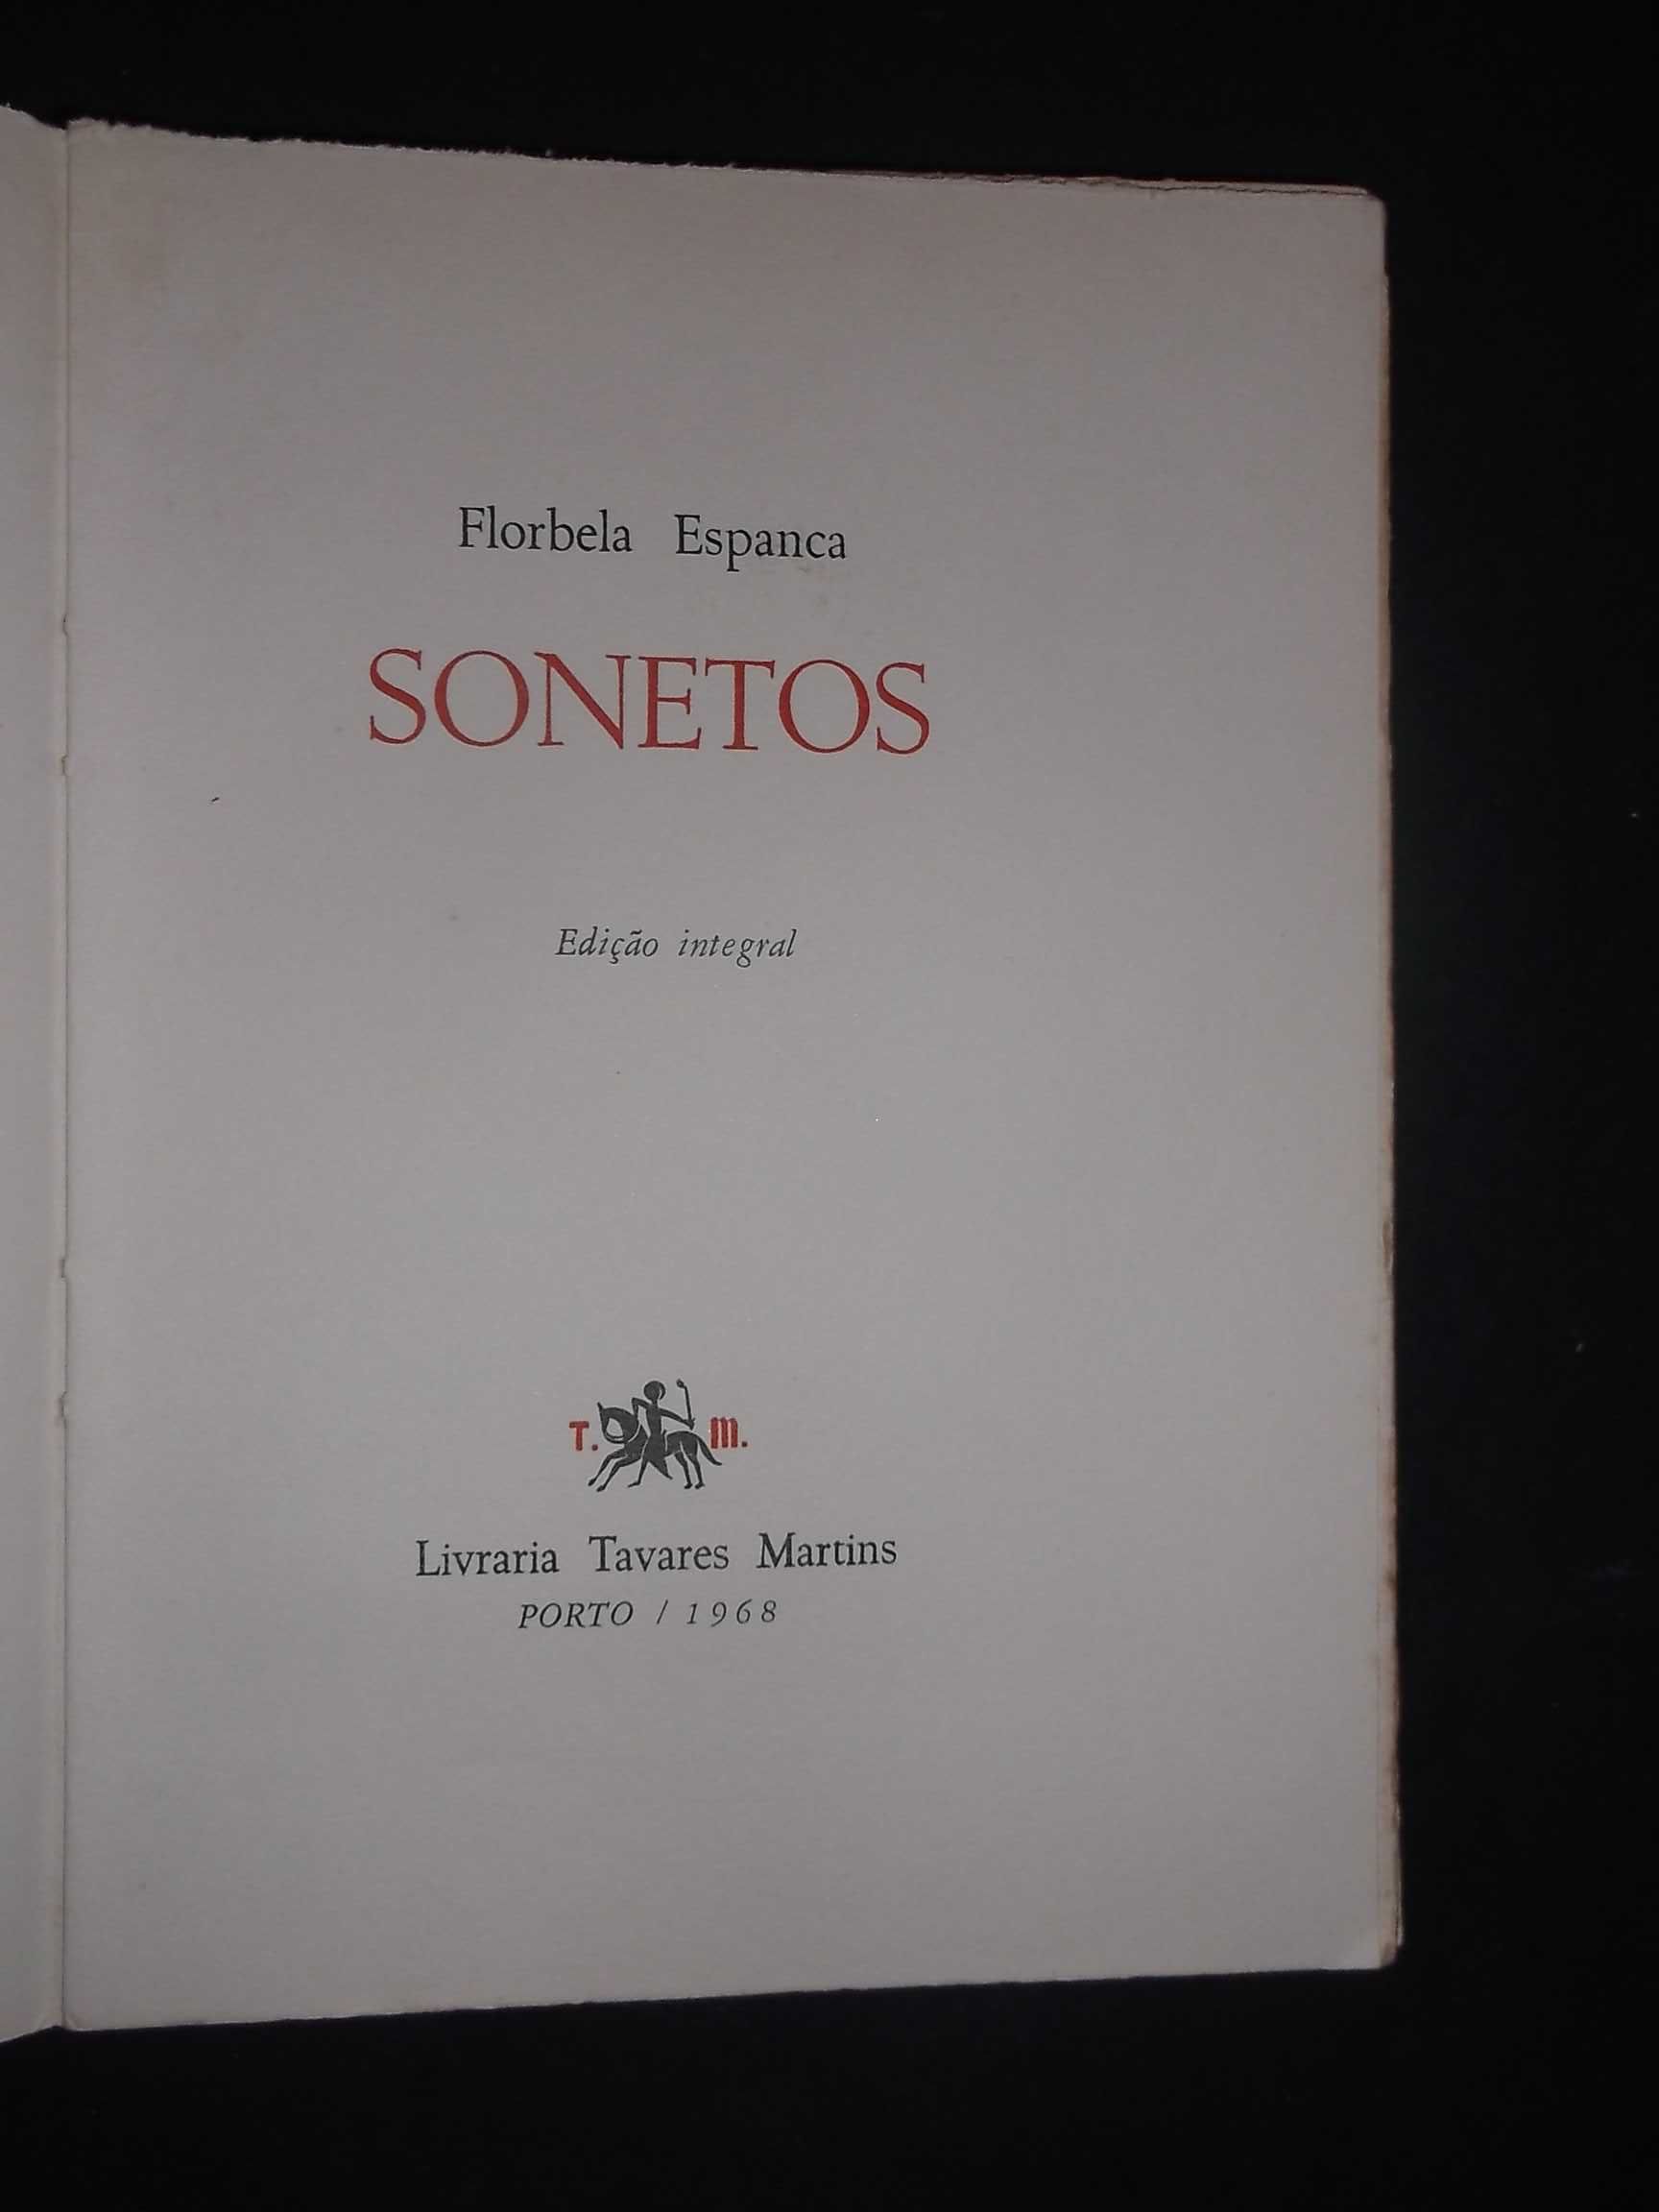 Florbela Espanca);Sonetos,Edição Integral